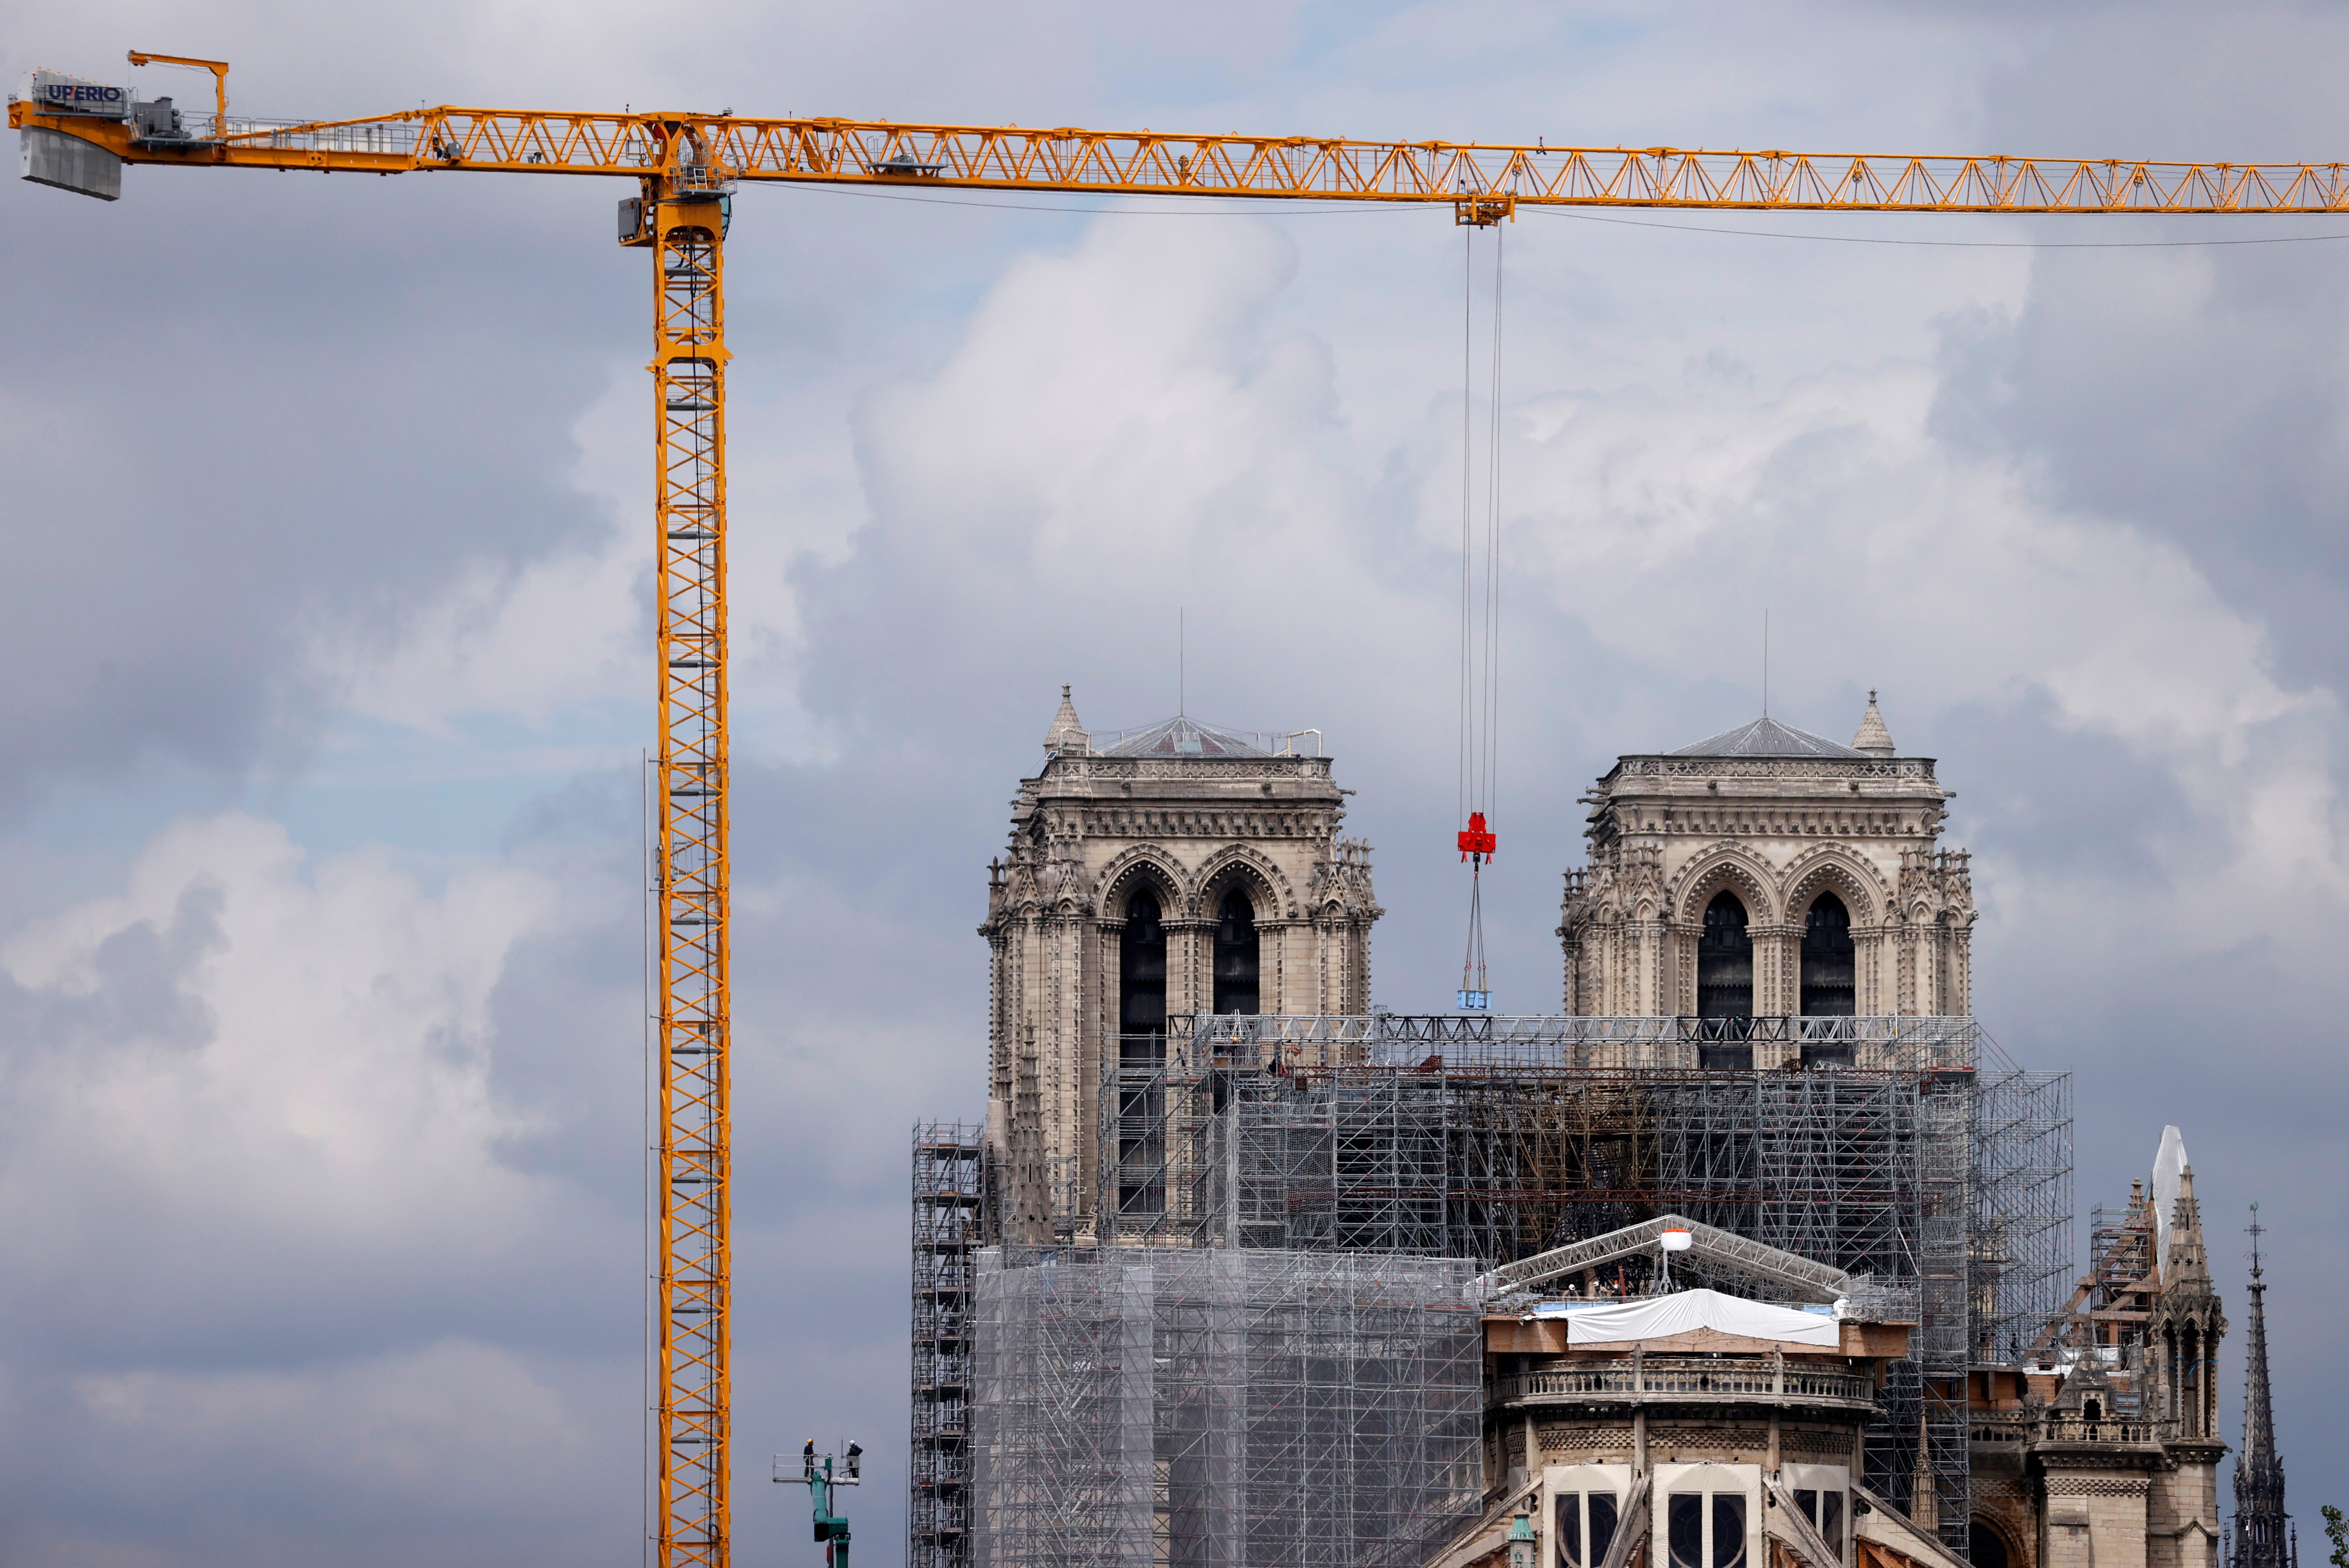 La catedral de Notre Dame busca artesanos para su restauración